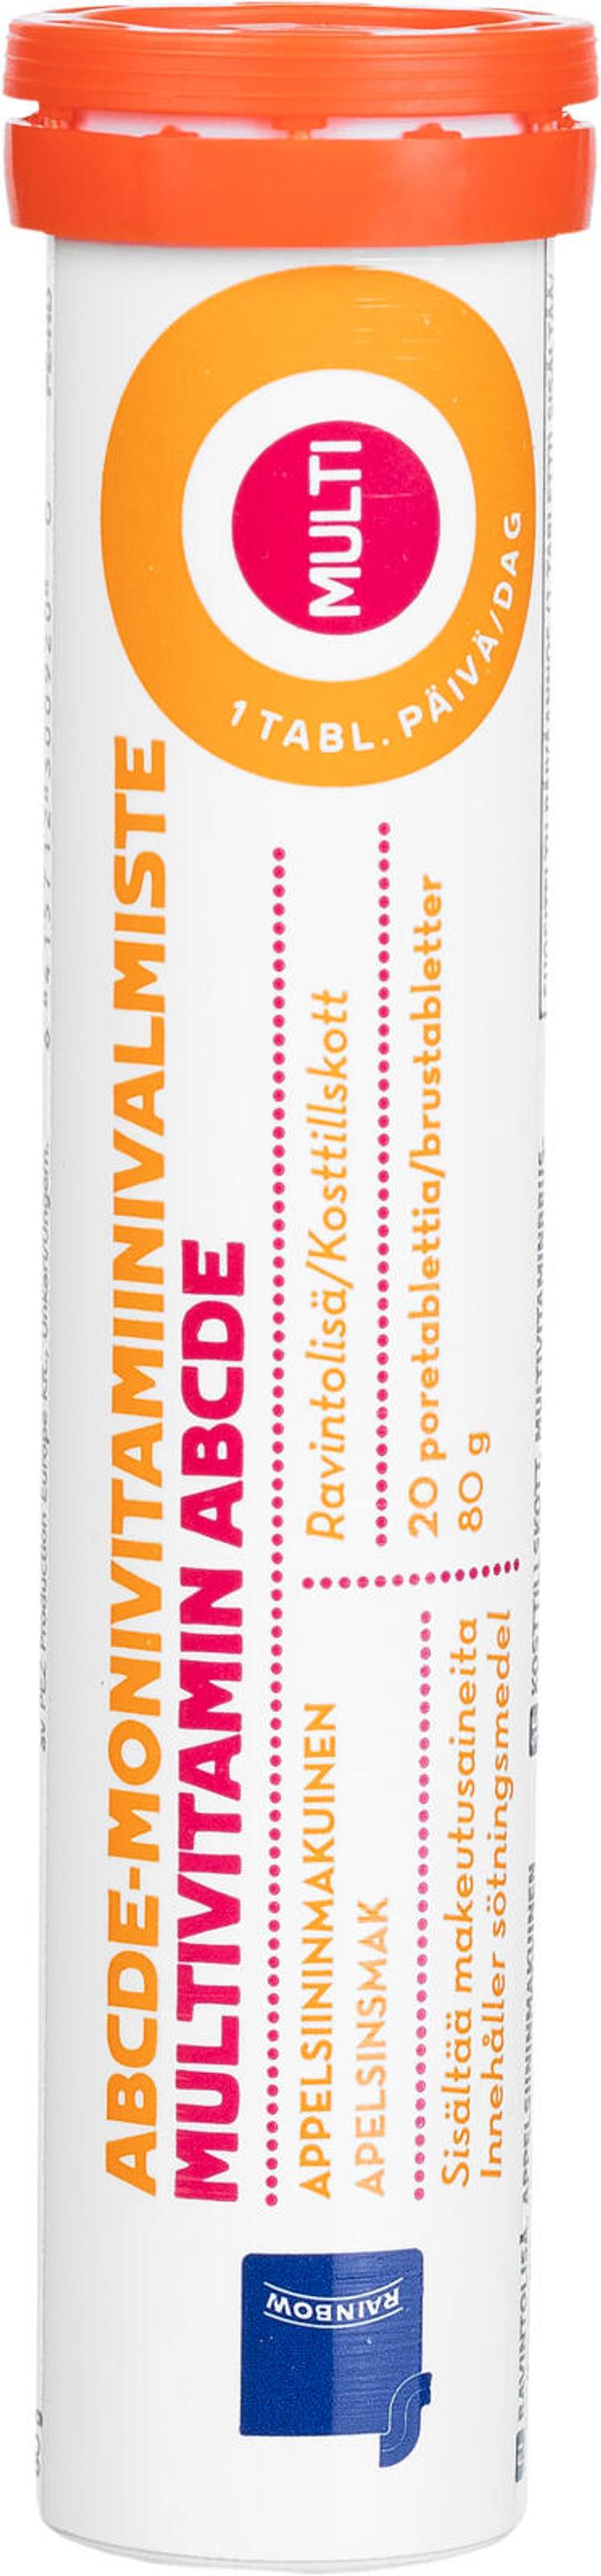 Rainbow ABCDE-monivitamiiniporetabletti appelsiininmakuinen ravintolisä 20kpl/80g